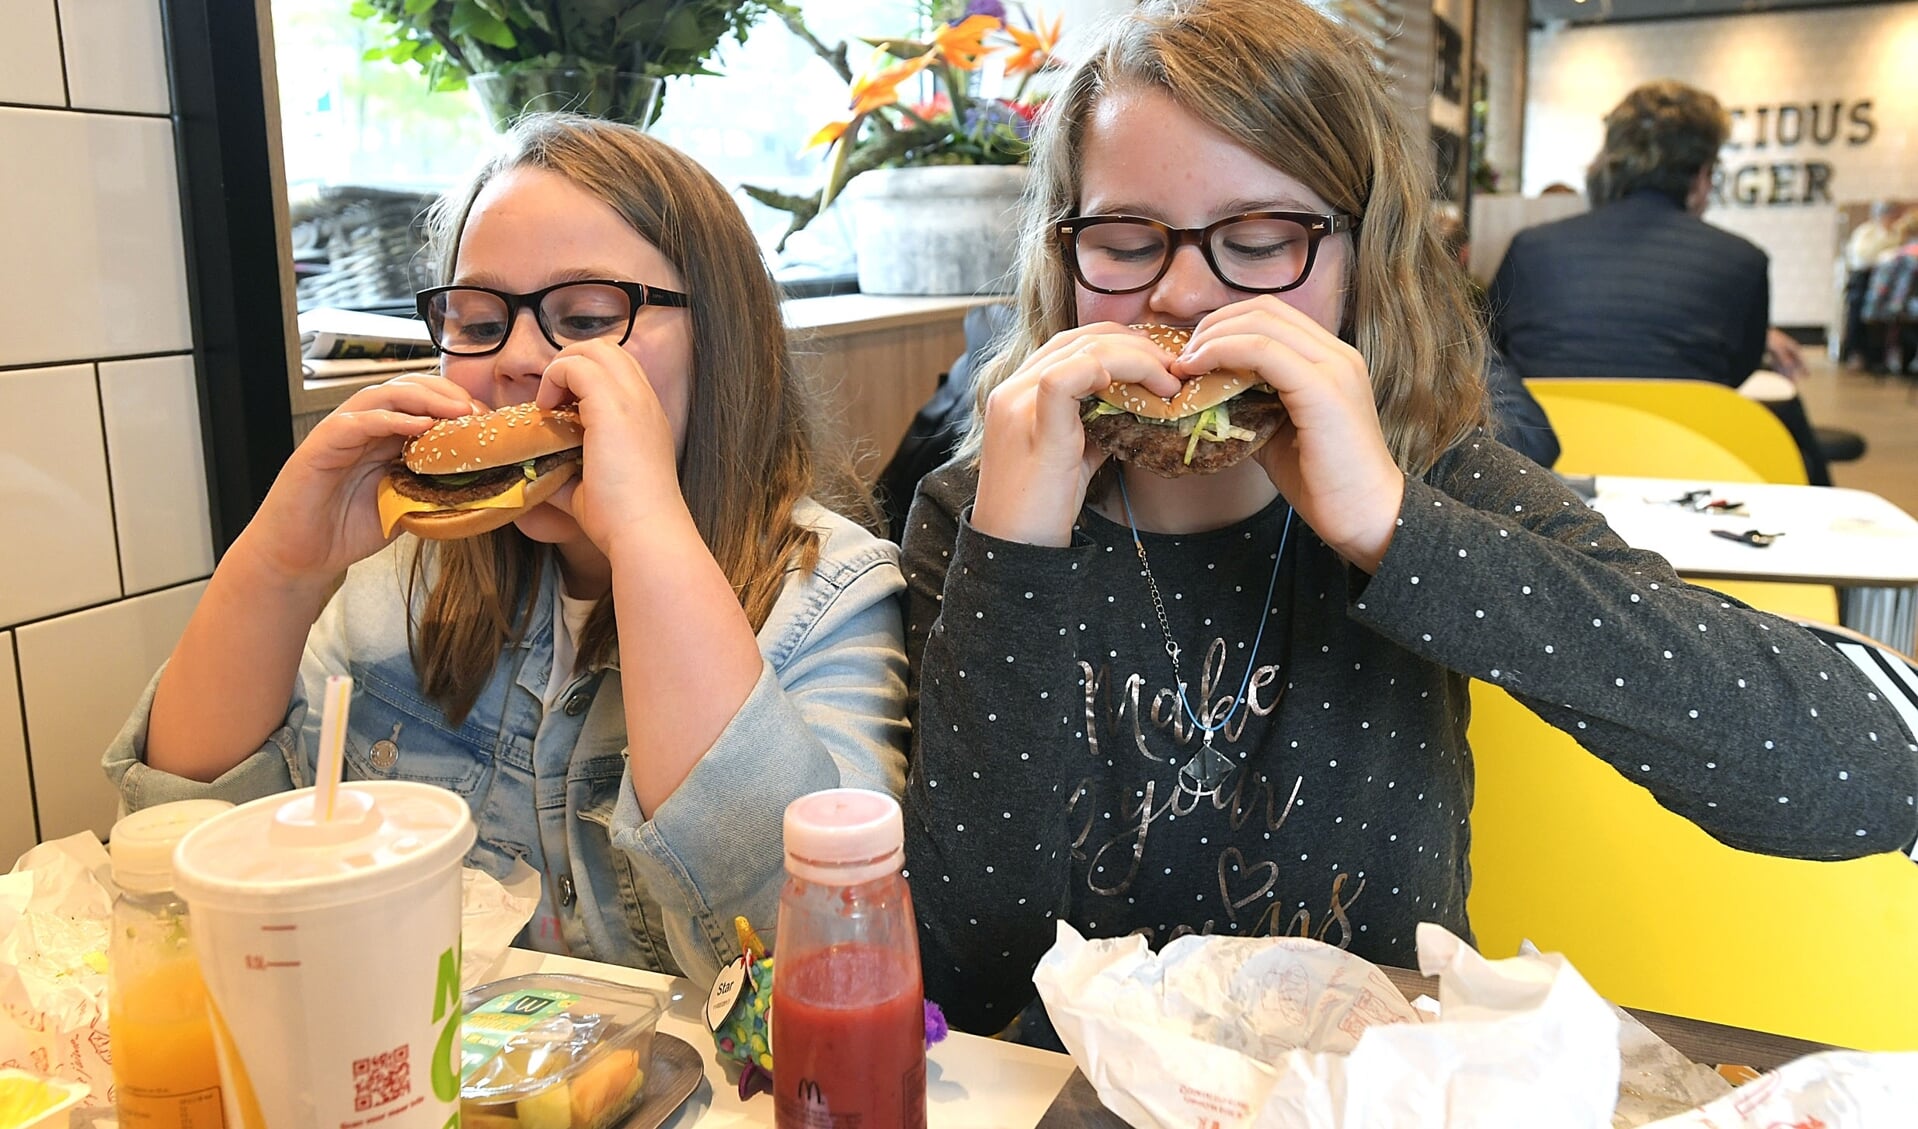 Hamburgerfans kunnen vanaf mei ook terecht in Hardinxveld om een burgertje te happen. 